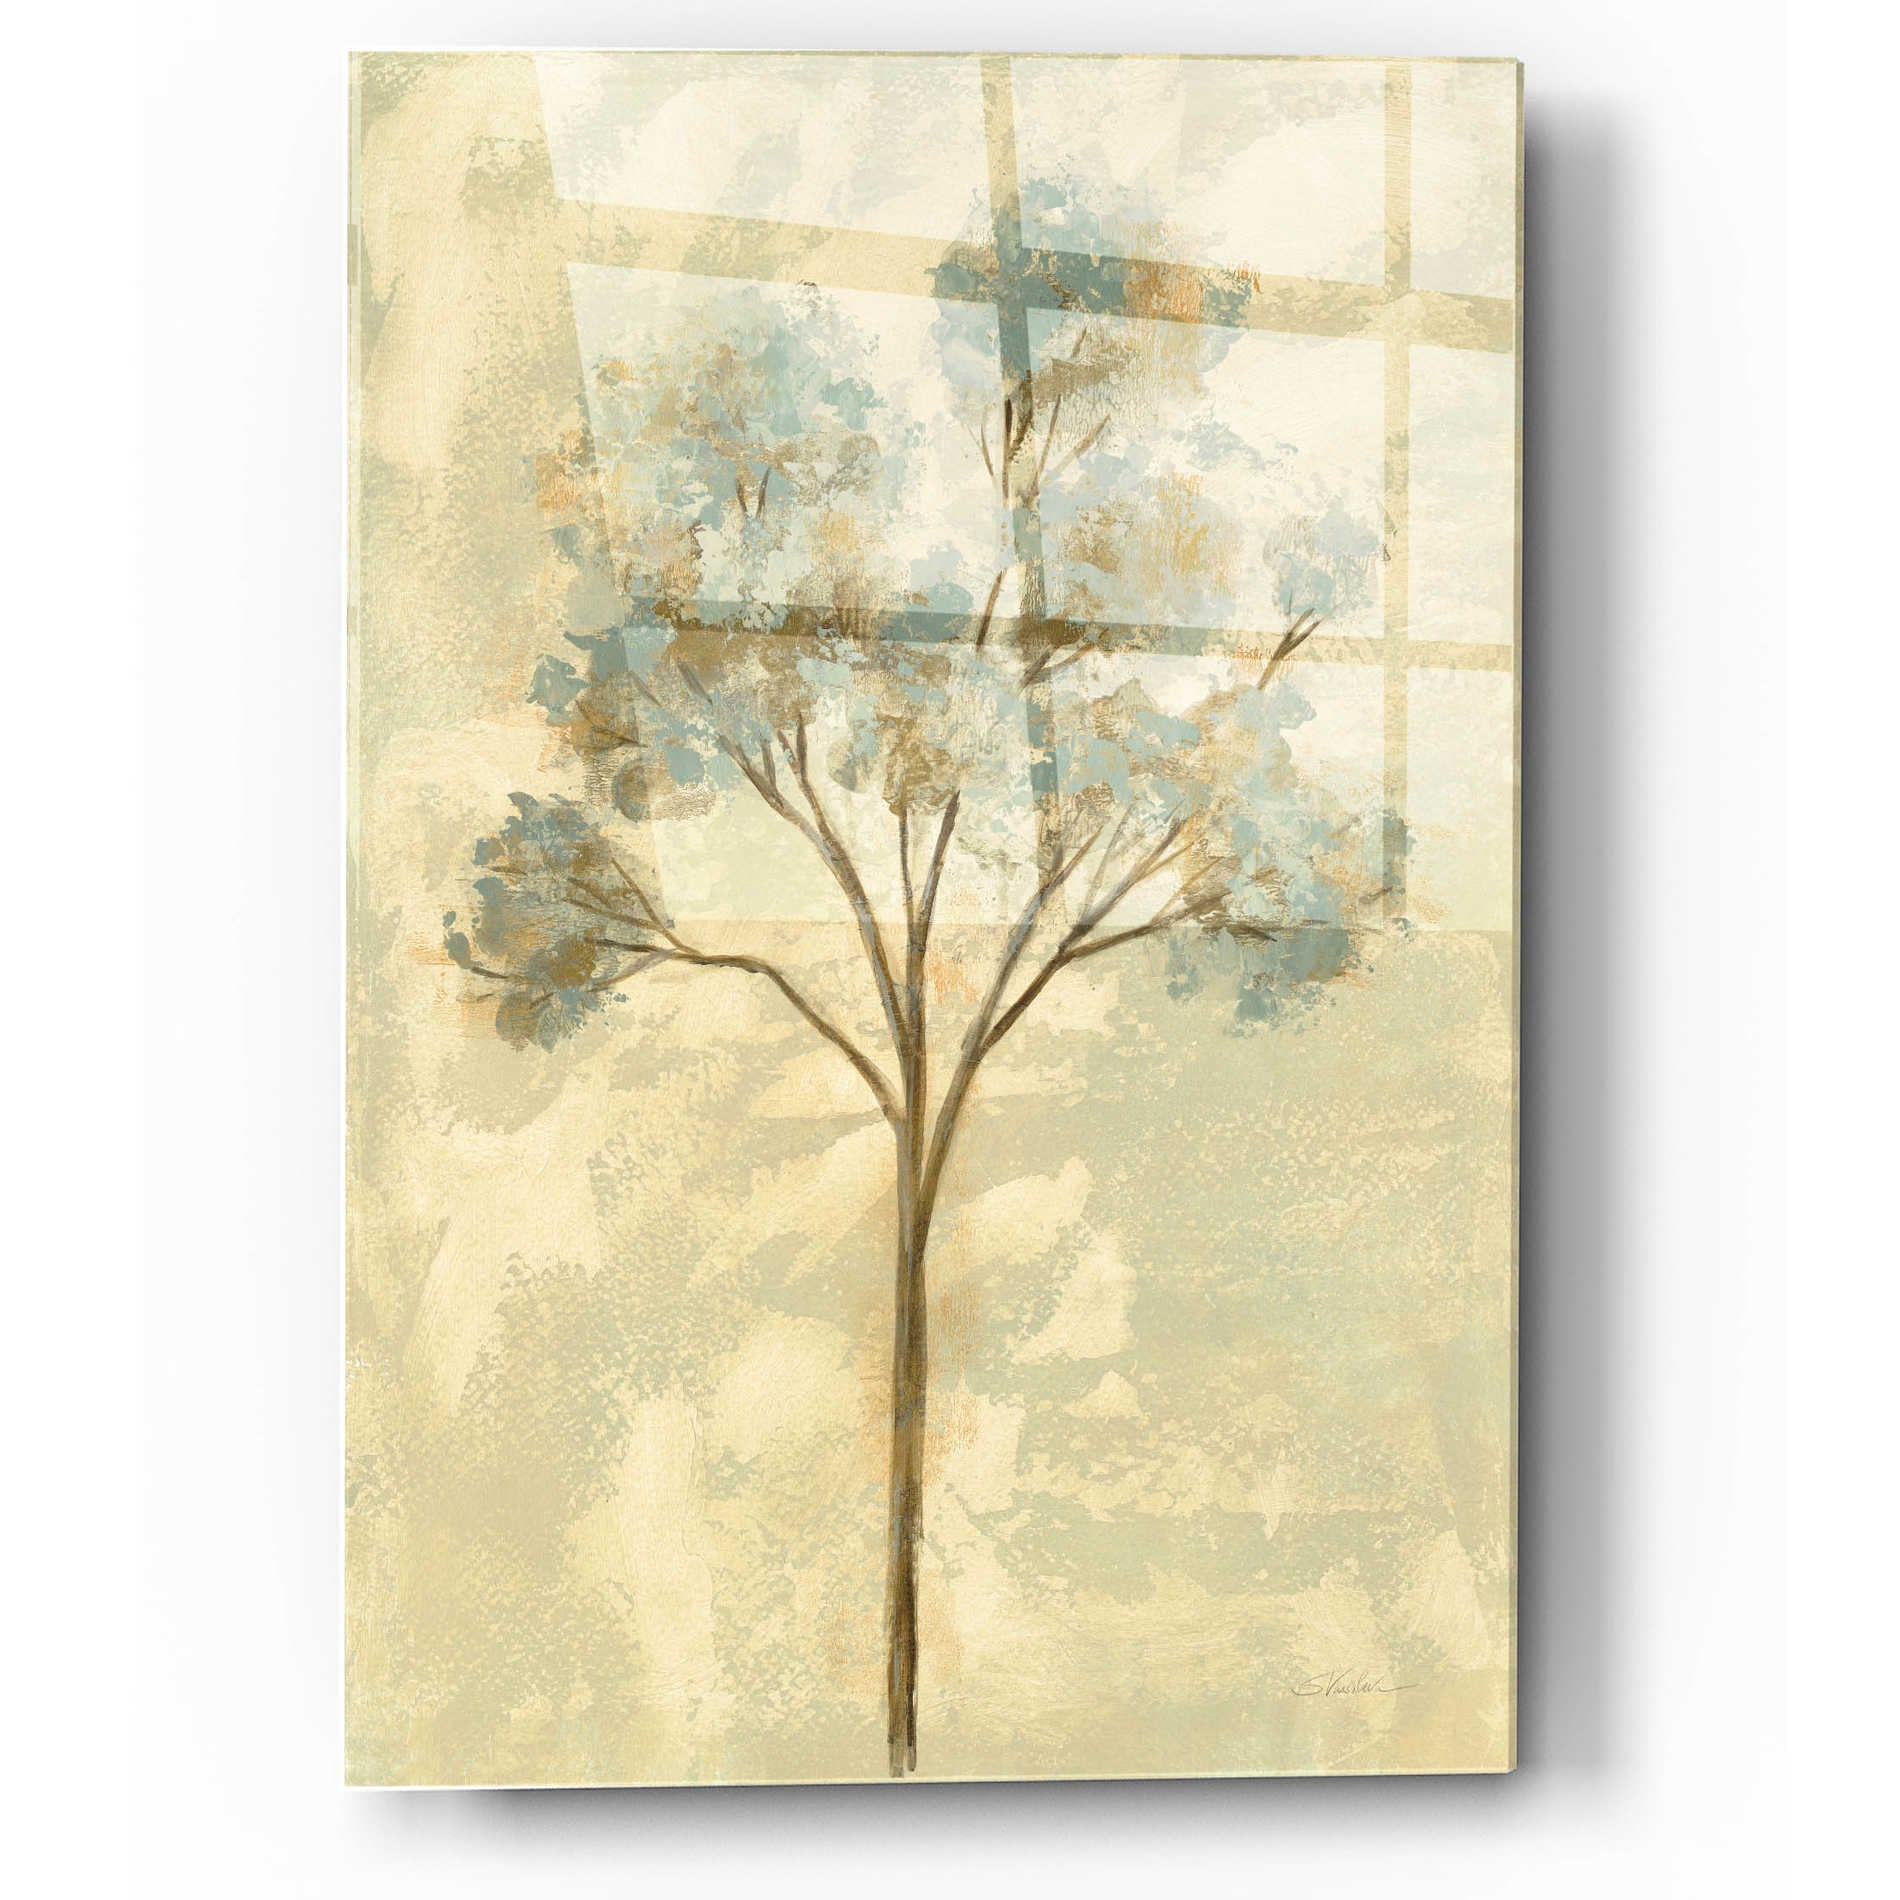 Epic Art 'Ethereal Tree I' by Silvia Vassileva, Acrylic Glass Wall Art,12x16